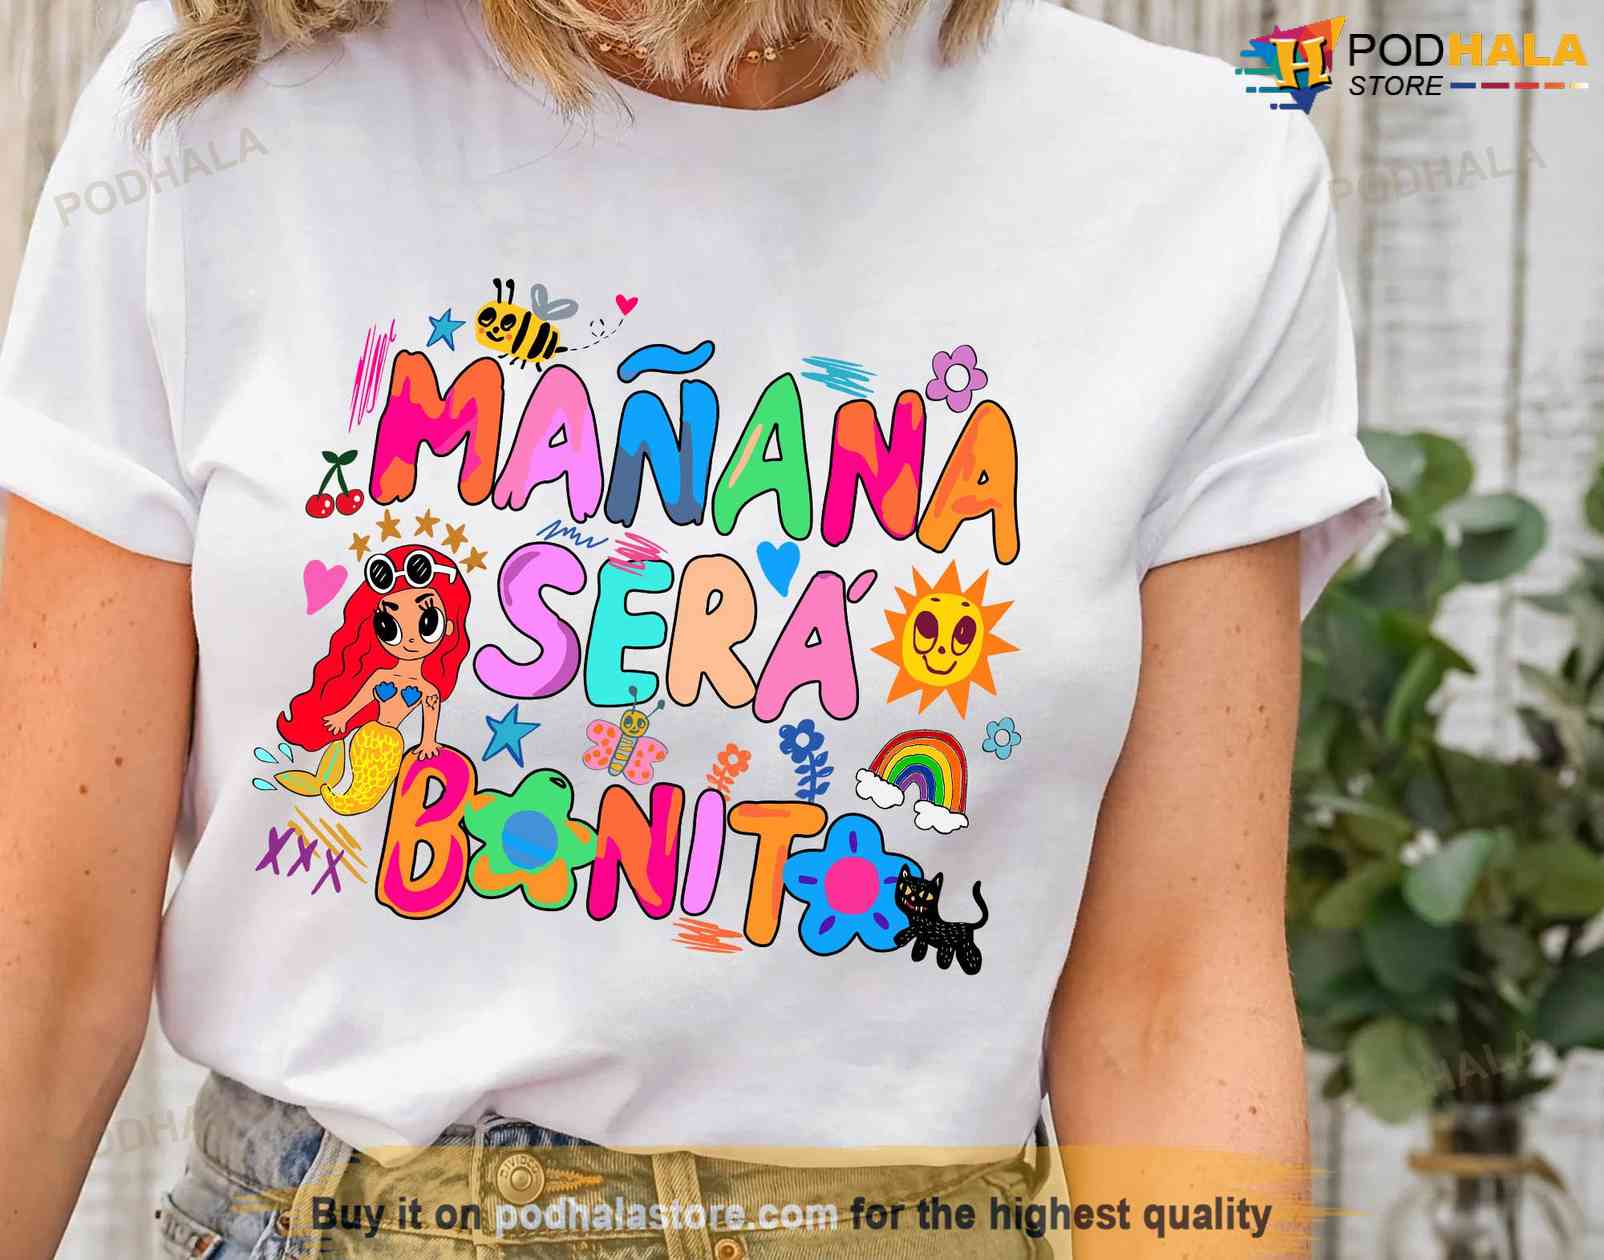 bouw arm Bestuiver Karol G Mañana Será Bonito Shirt, Tomorrow Will Be Nice Shirt - Bring Your  Ideas, Thoughts And Imaginations Into Reality Today